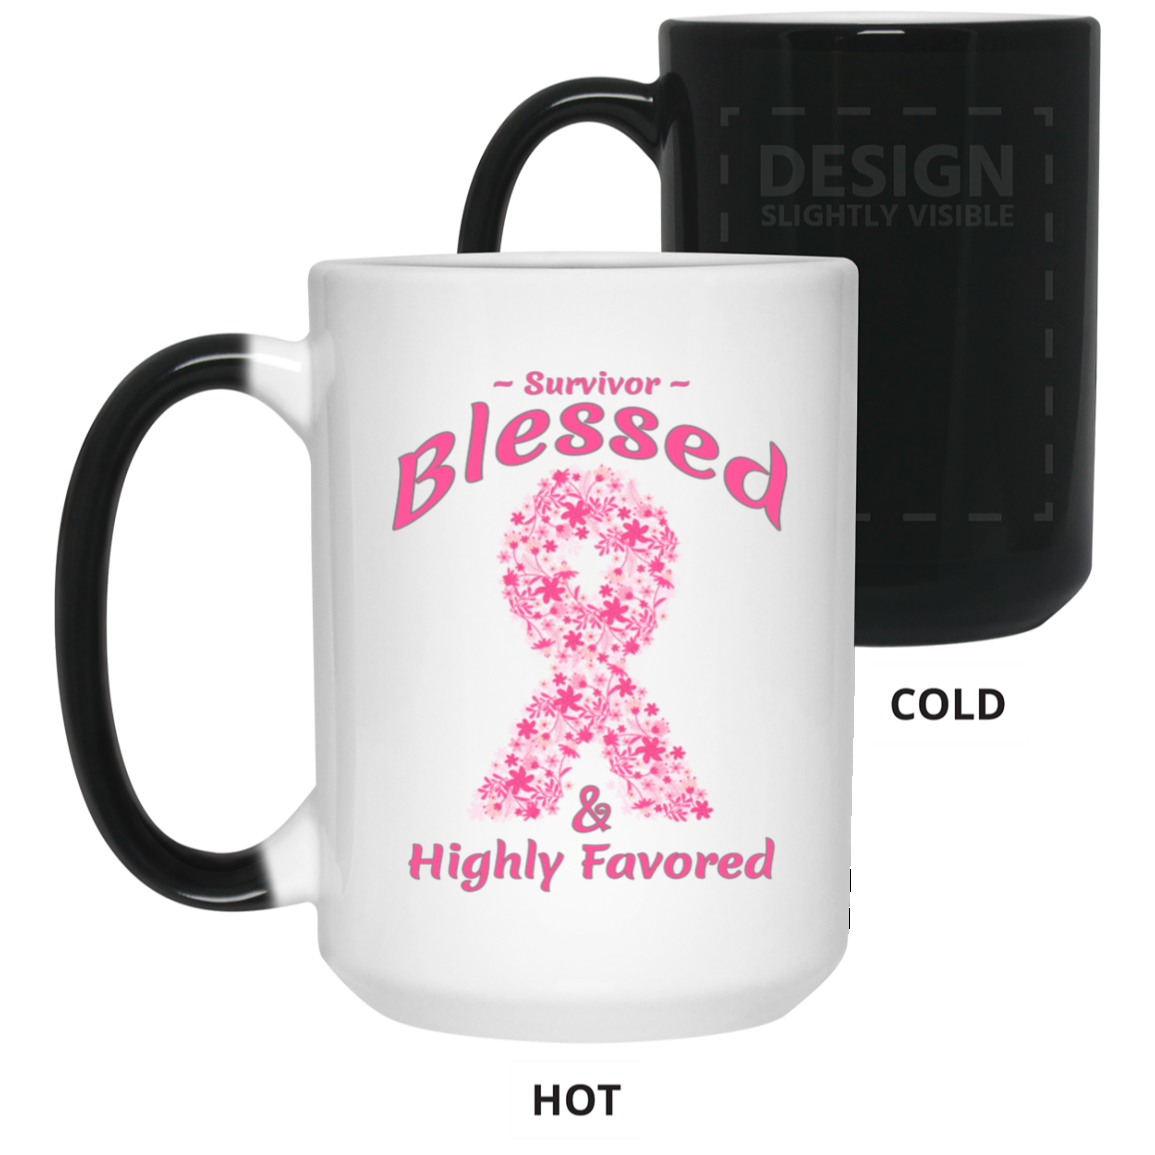 21550 Breast Cancer Survivor_Blessed-15 oz. Color Changing Mug